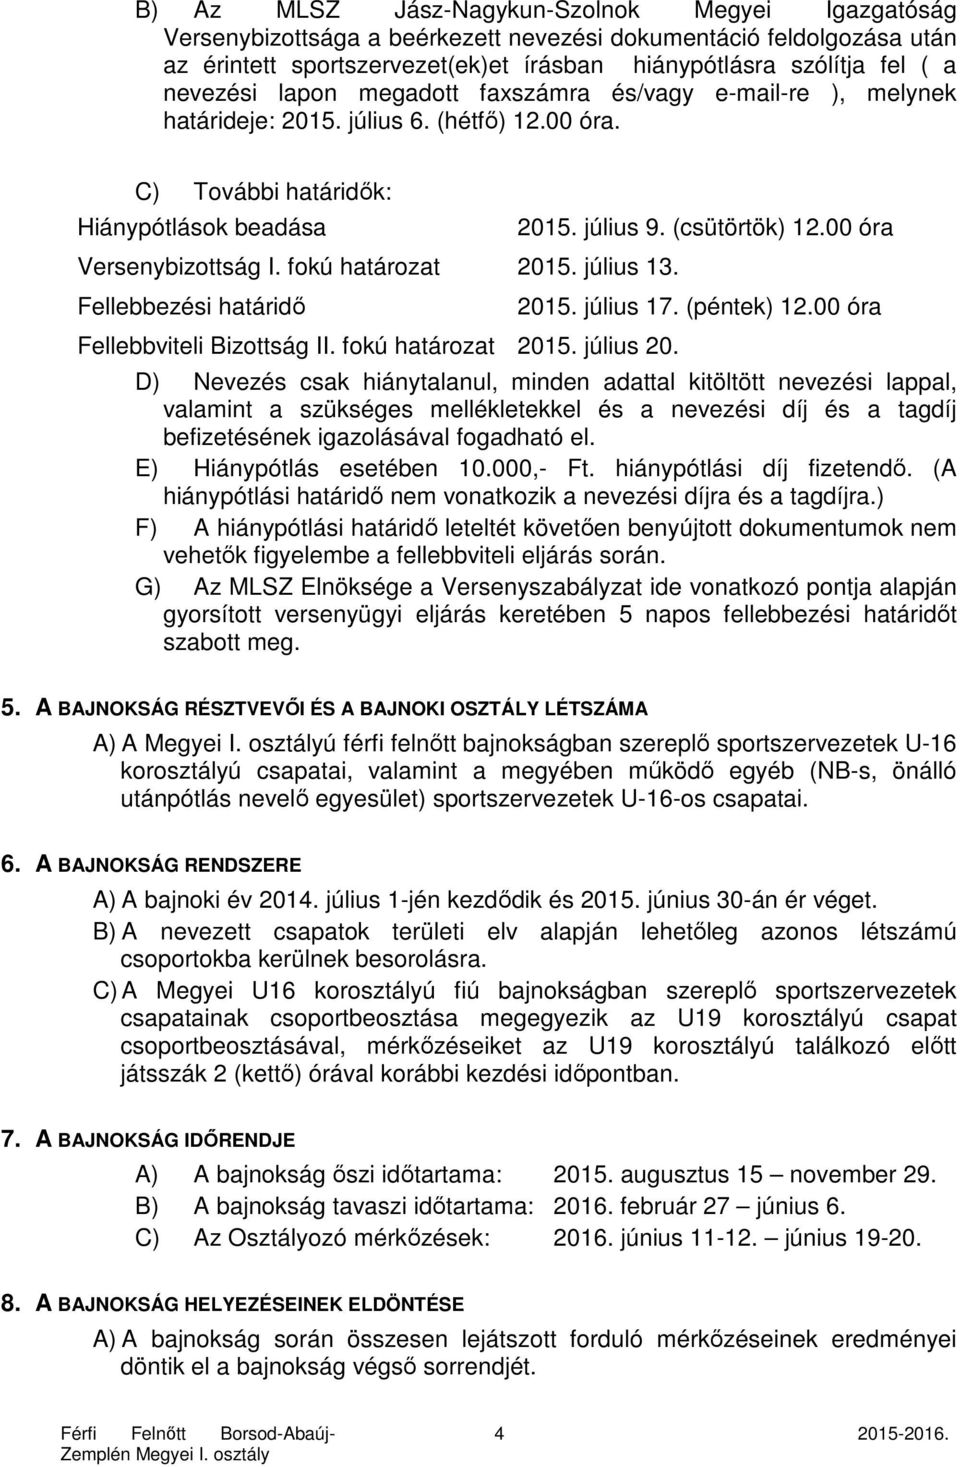 július 13. Fellebbezési határidő Fellebbviteli Bizottság II. fokú határozat 2015. július 20. 2015. július 9. (csütörtök) 12.00 óra 2015. július 17. (péntek) 12.